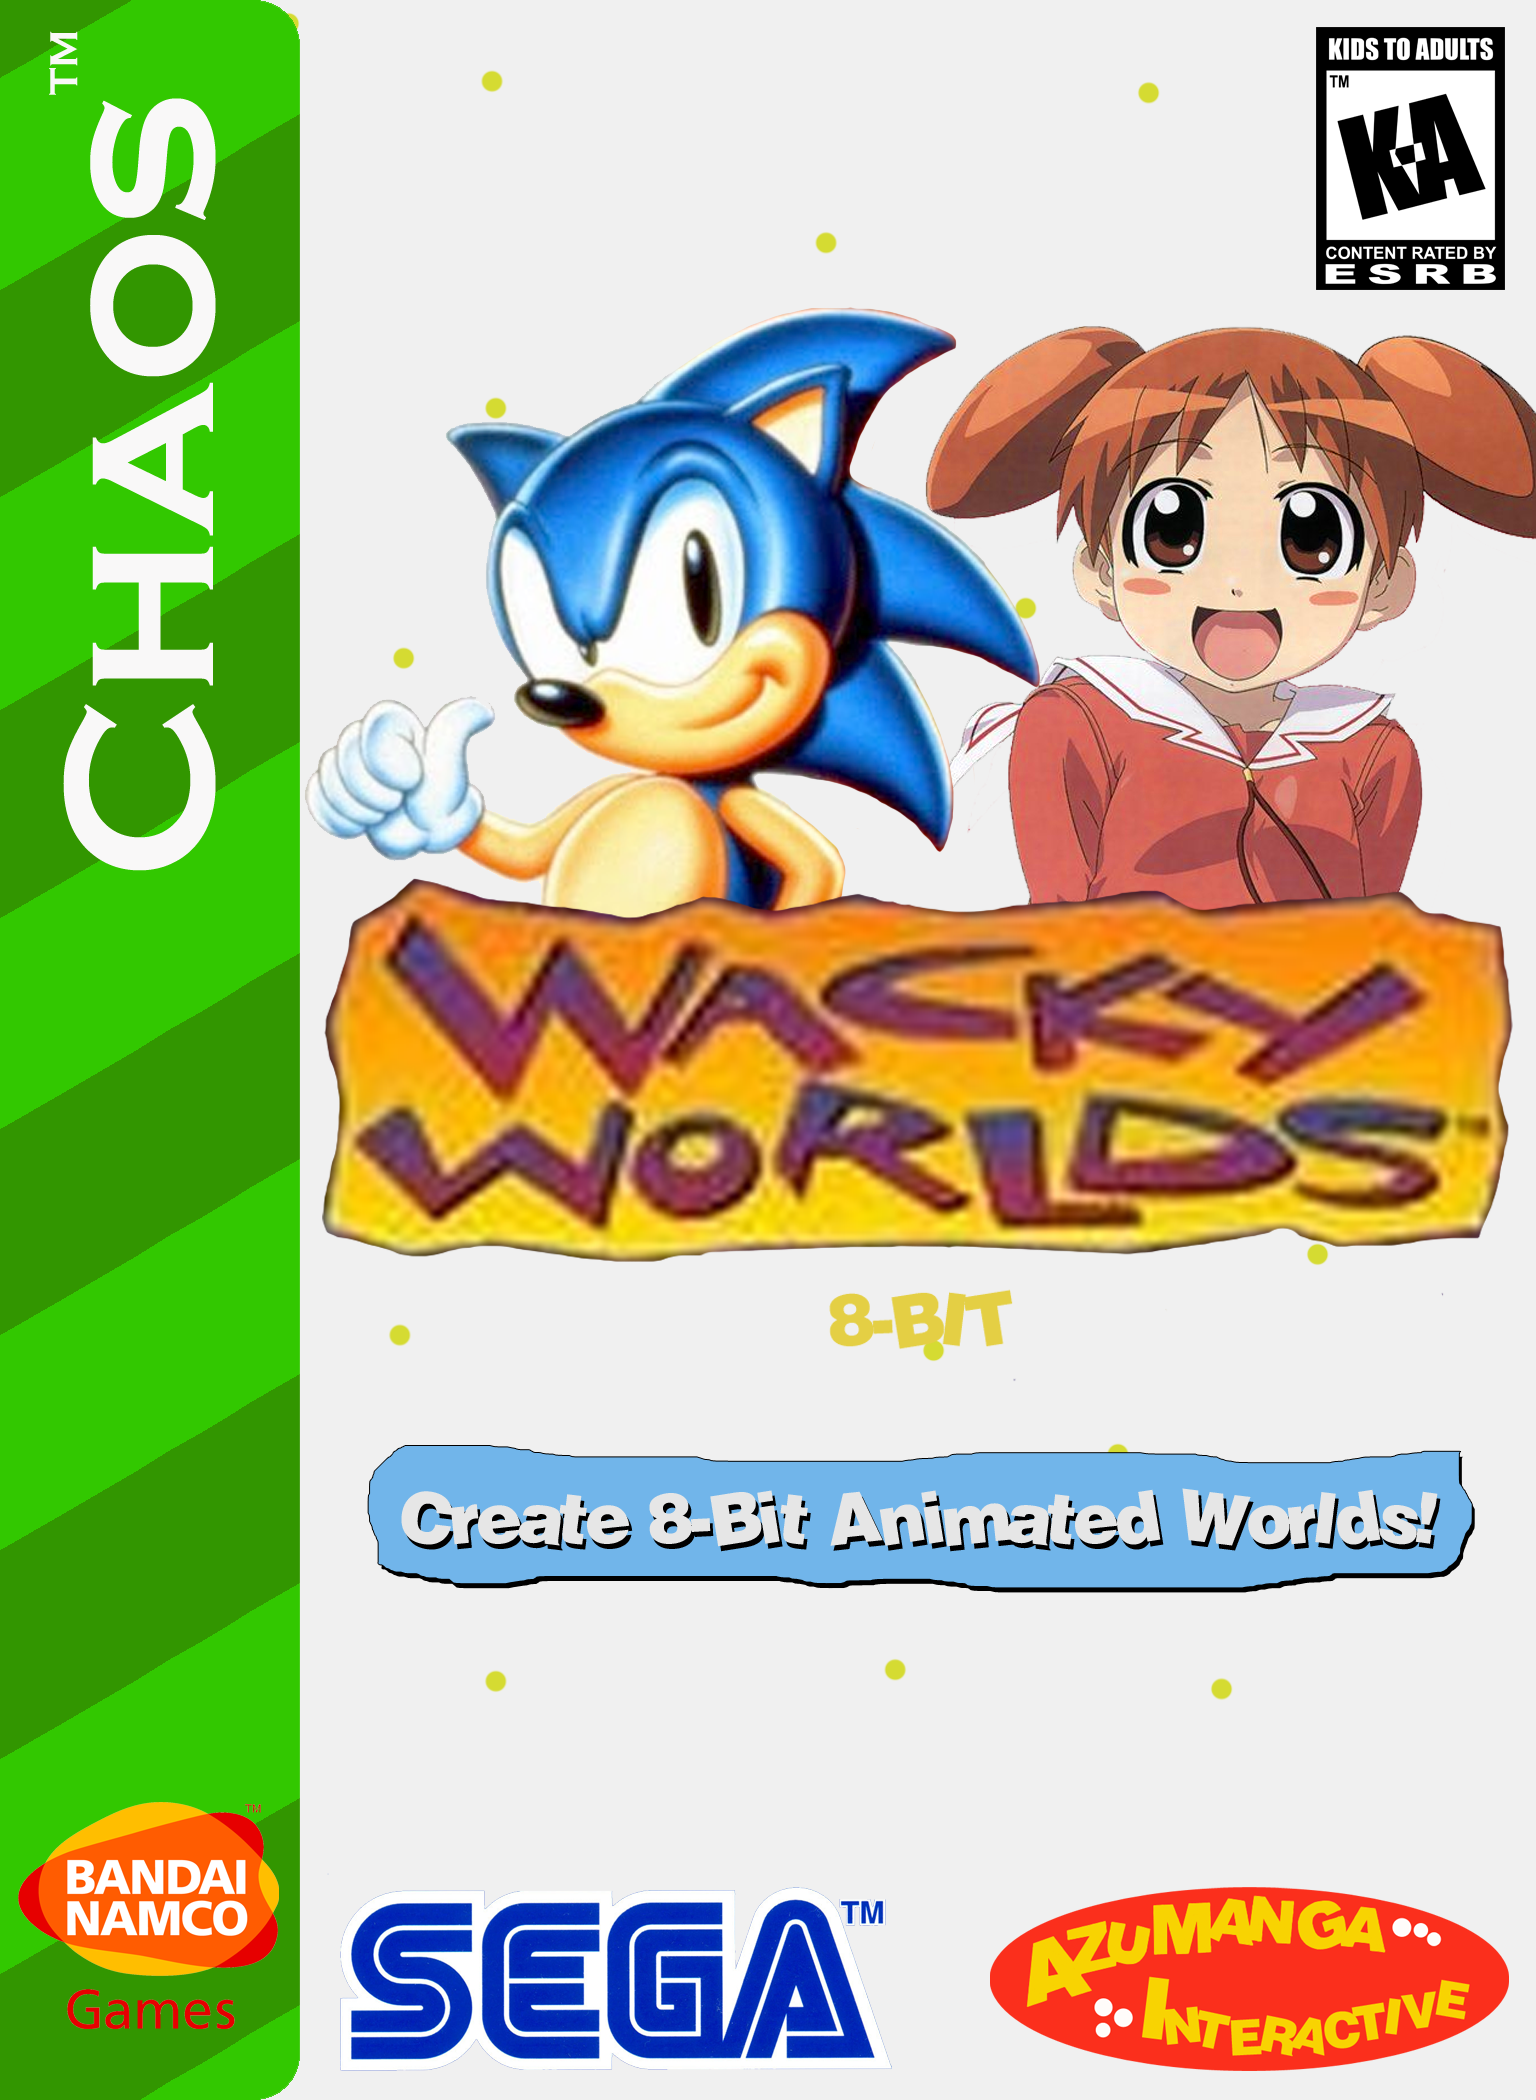 Sega's Wacky Worlds 8-Bit | Video Games Fanon Wiki | Fandom